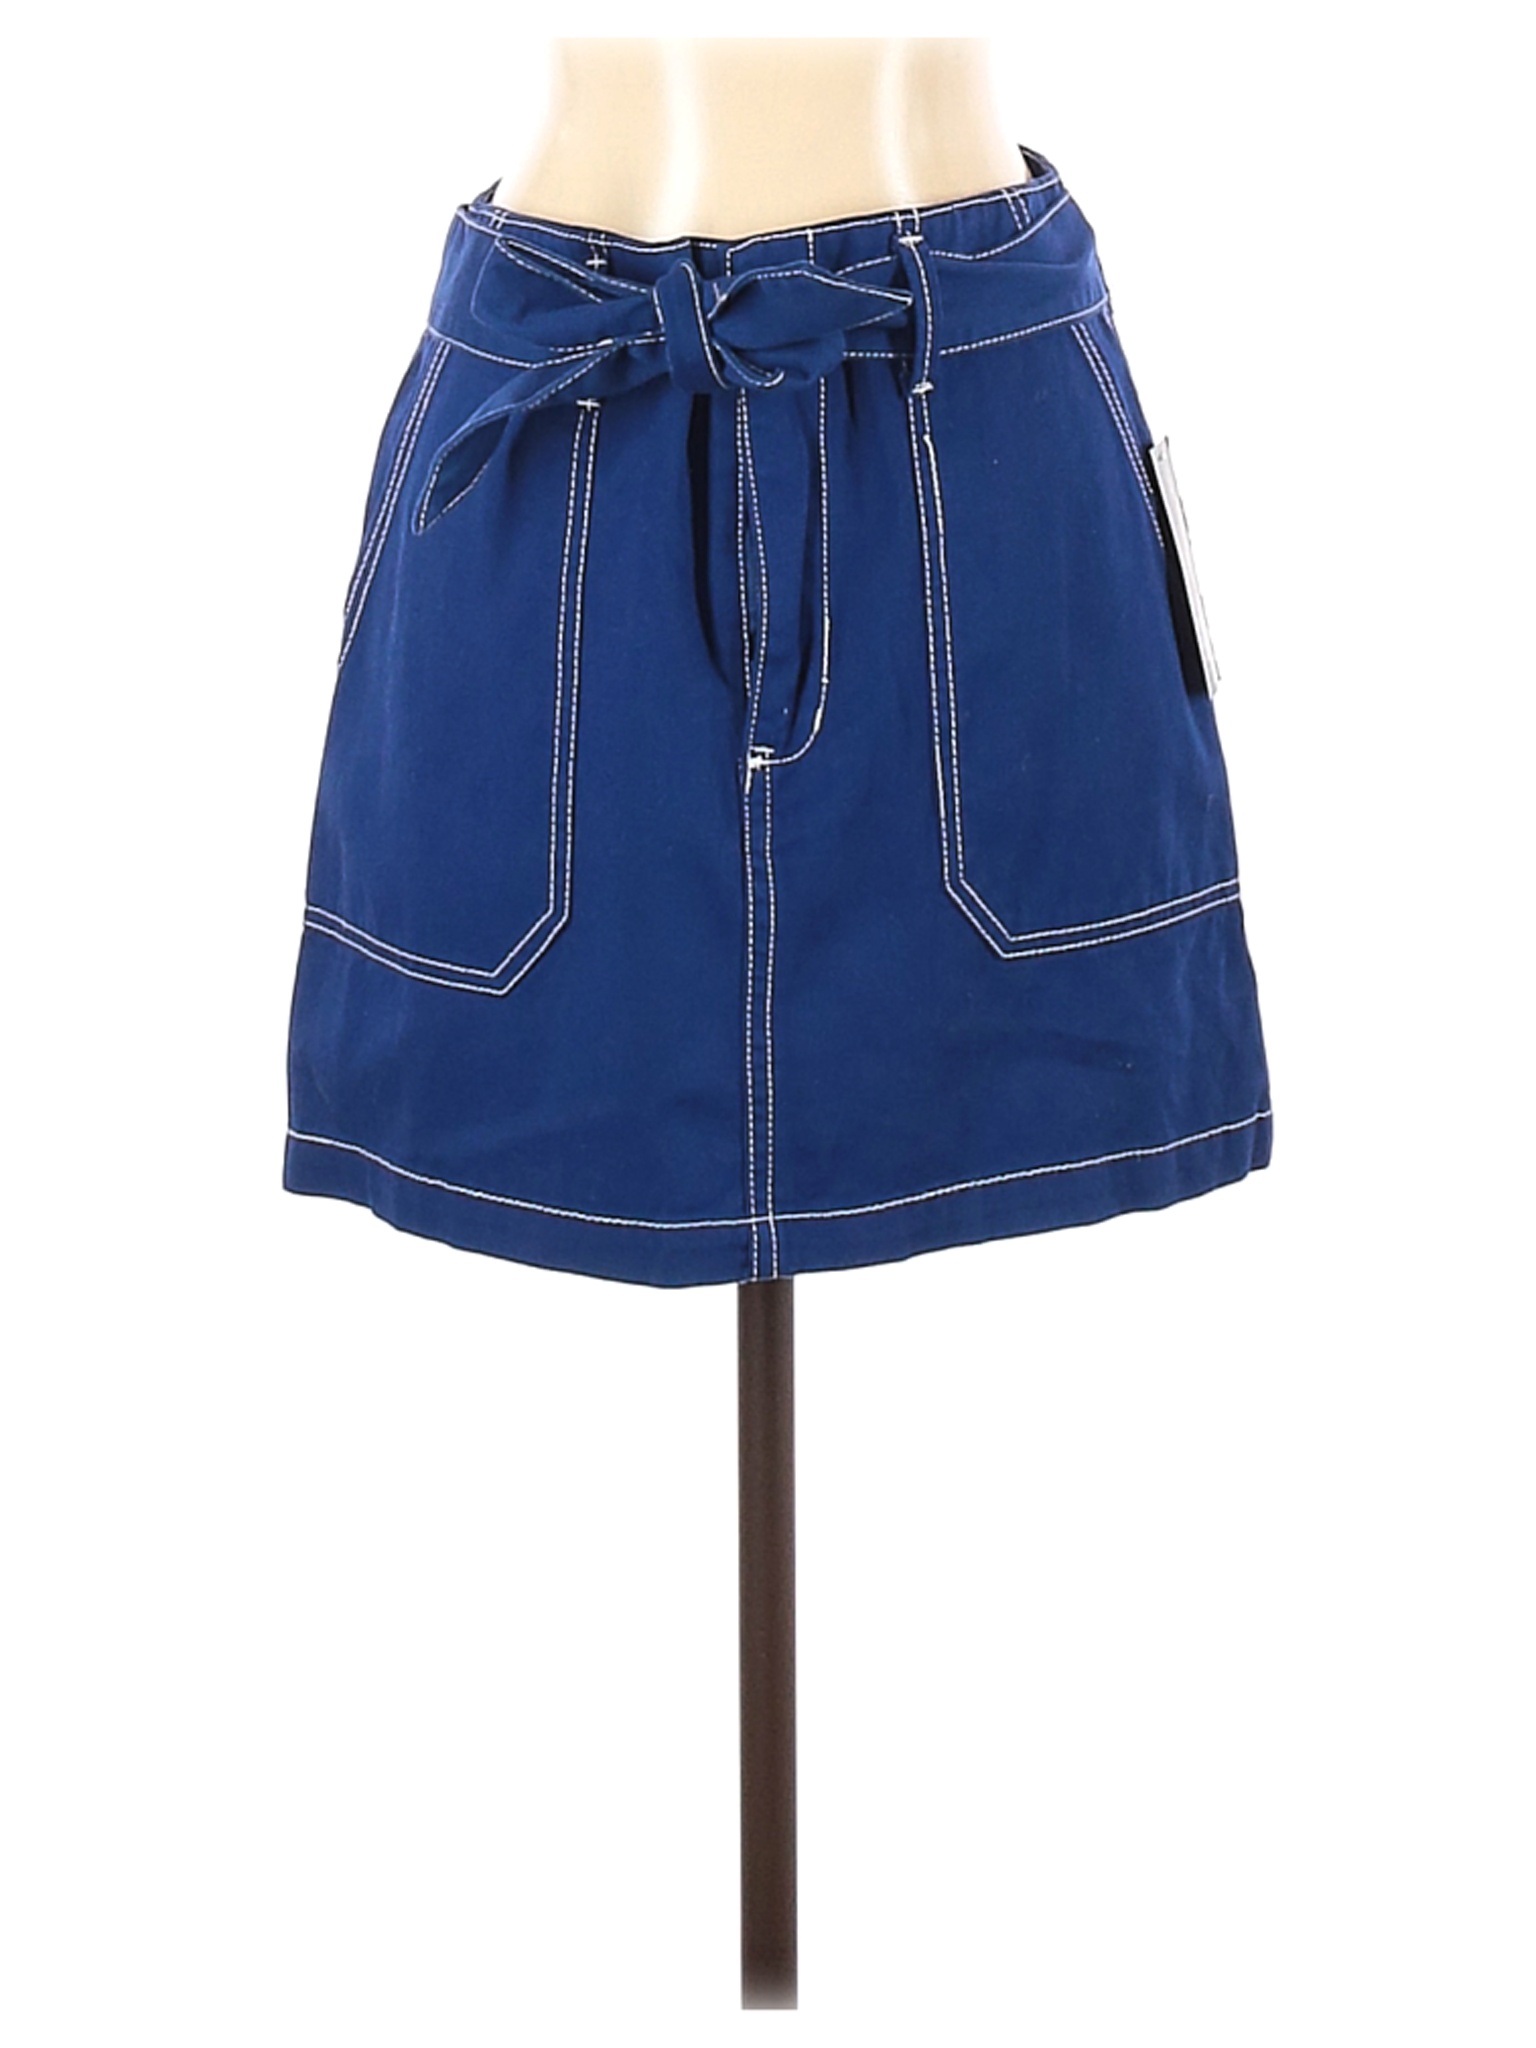 NWT Wild Fable Women Blue Denim Skirt 2 | eBay